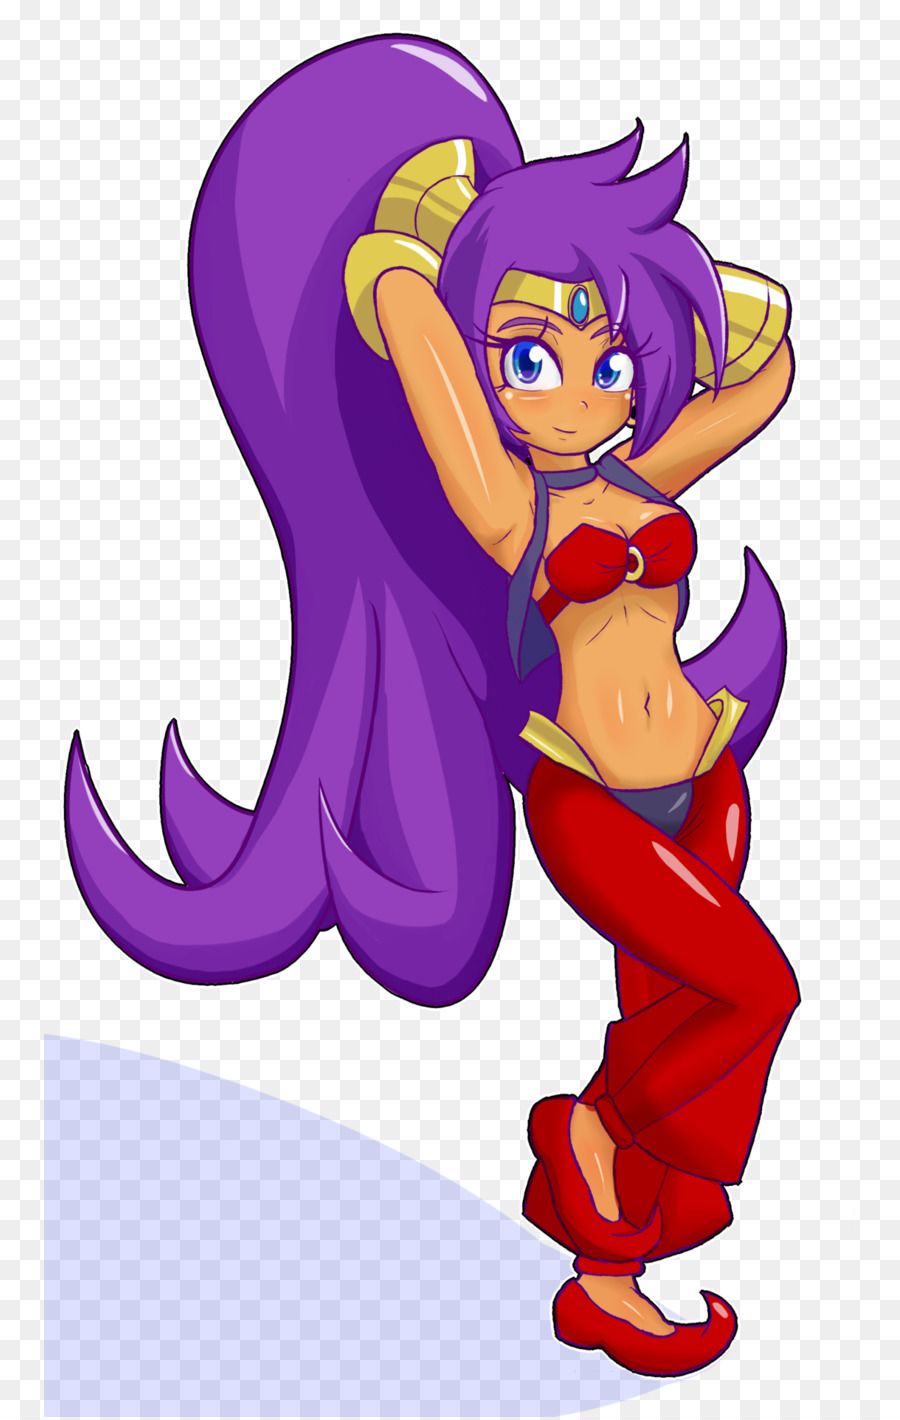 Shantae e the Pirate's Curse DeviantArt Illustrazione Clip art - Shantae